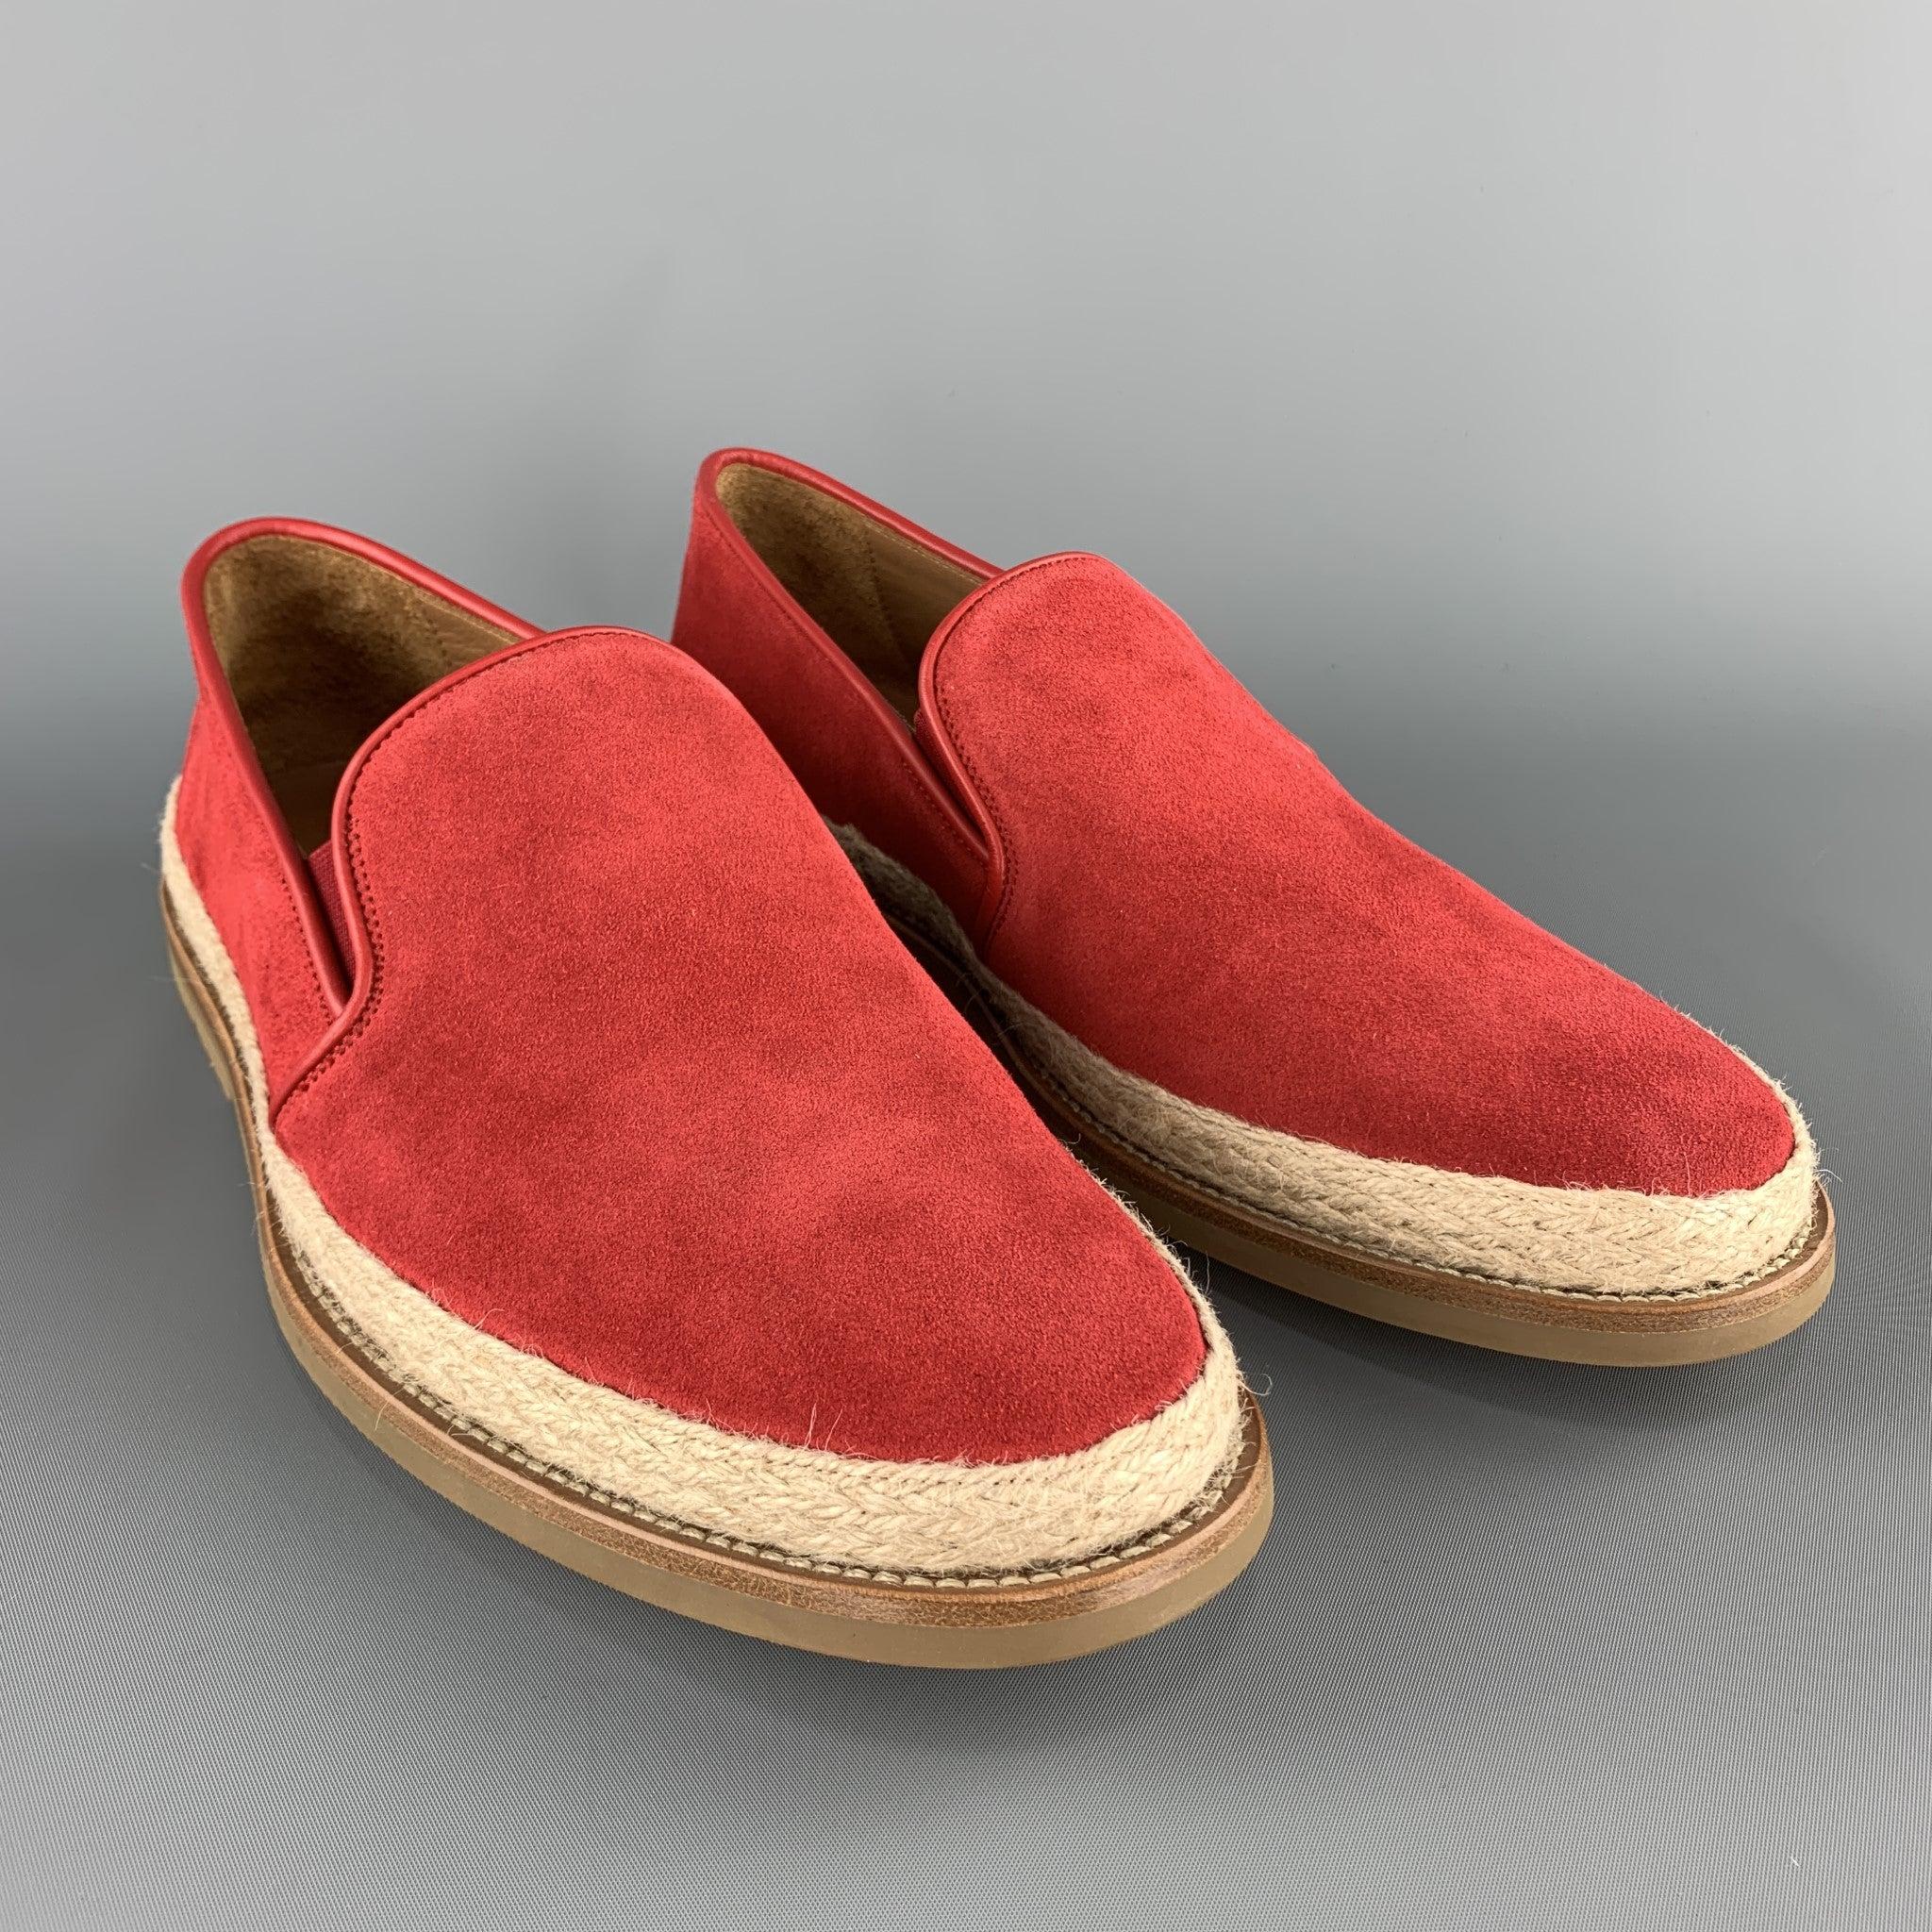 AQUATALIA Loafer aus rotem Wildleder mit geflochtenem Seilbesatz und Gummisohle. Hergestellt in Italien.ausgezeichnet
Gebrauchtes Zustand. 

Markiert:   UK 10Außensohle: 12,25 x 4,75 Zoll 
  
  
 
Referenz: 103509
Kategorie: Loafer
Mehr Details
   